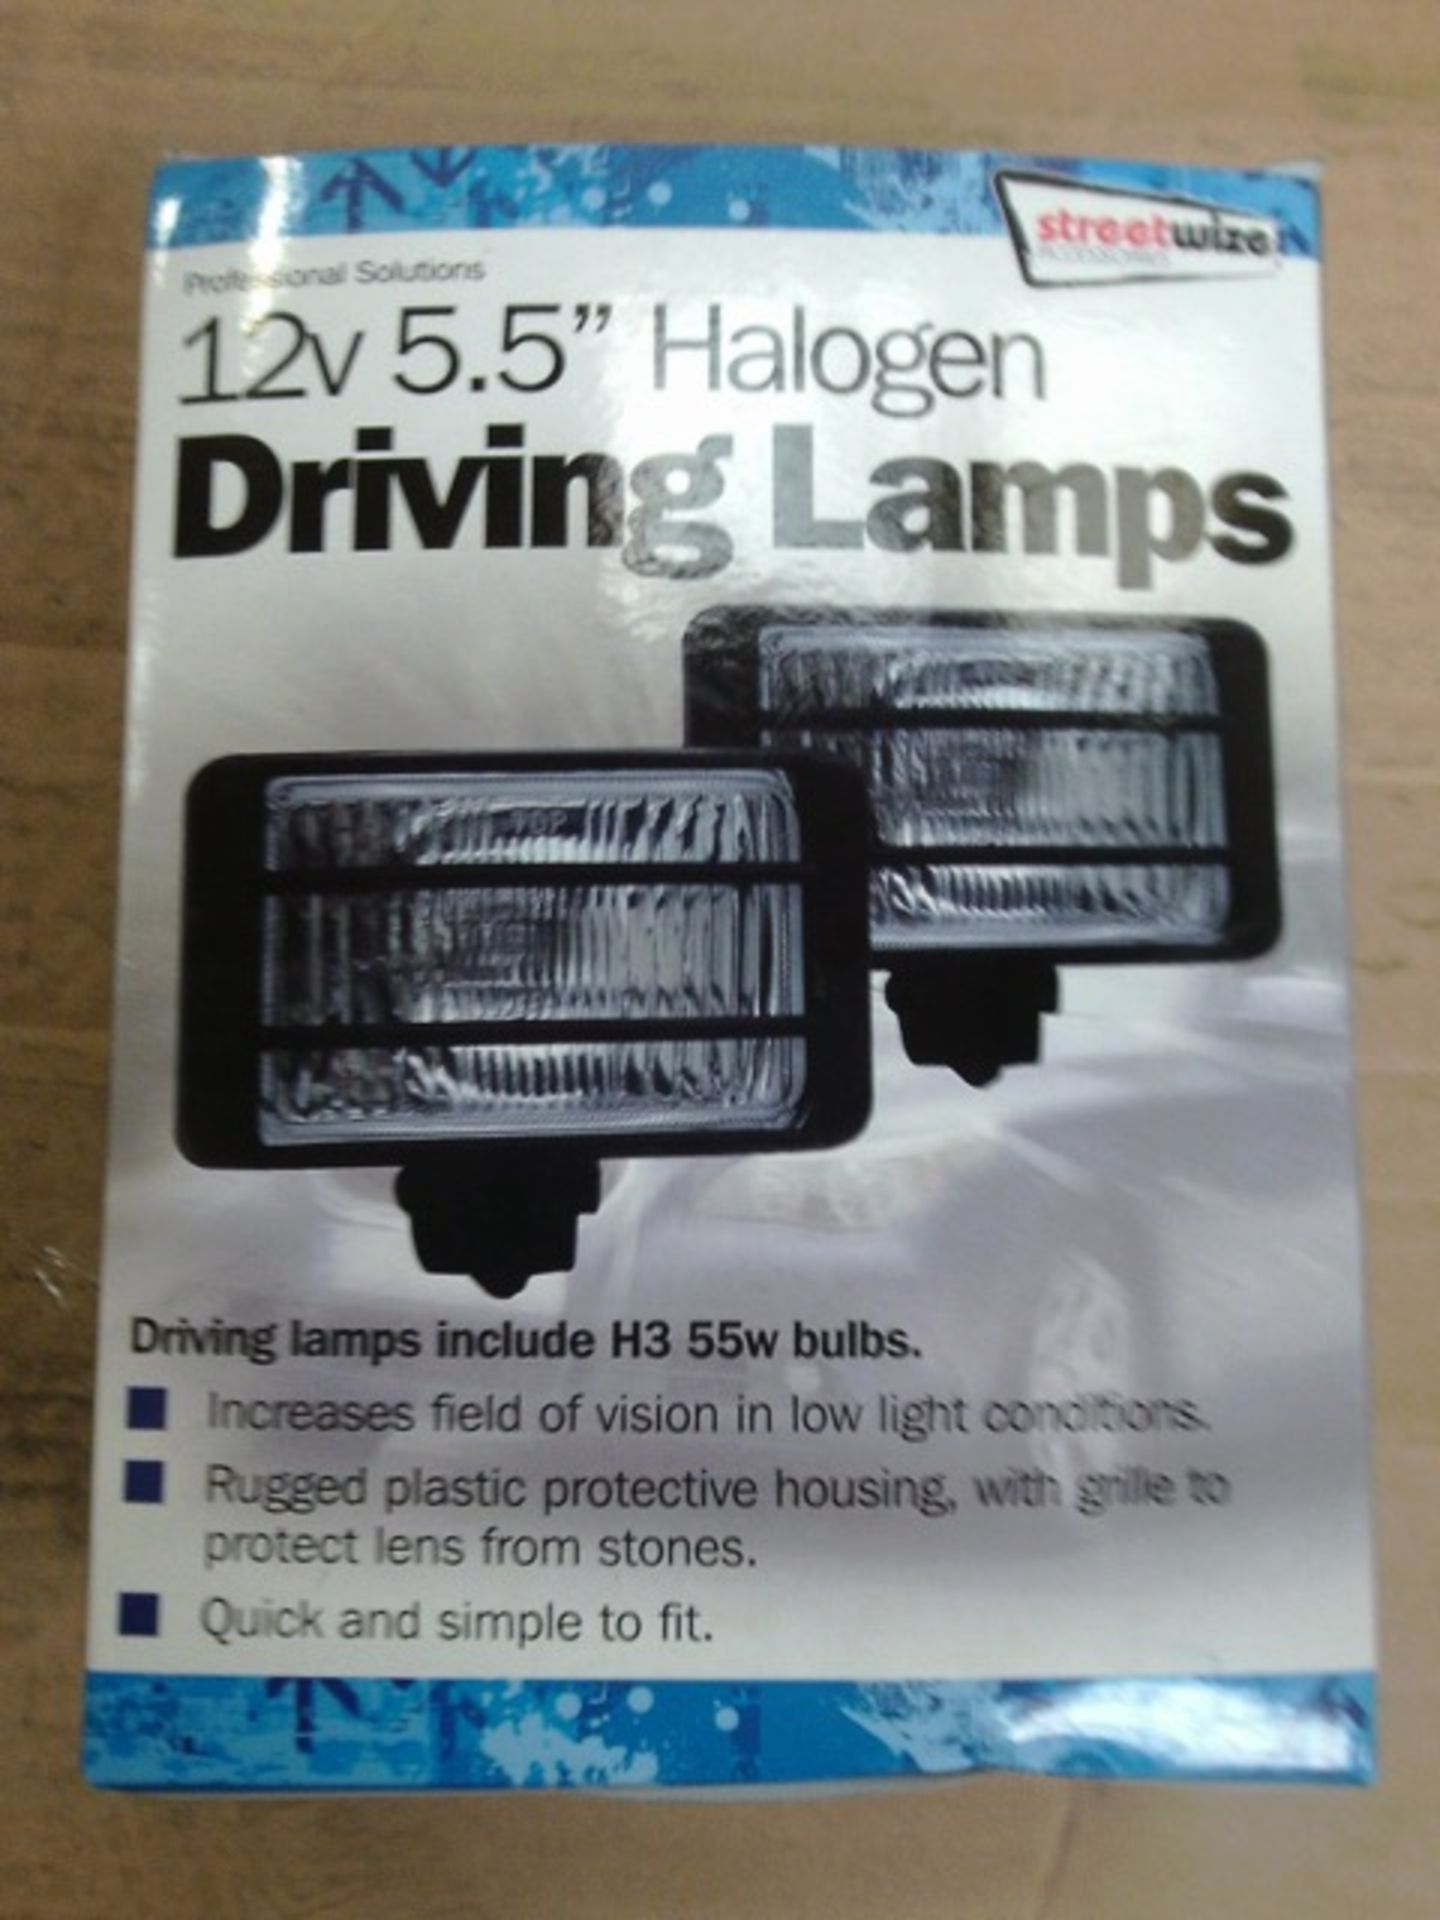 12V 5.5" Halogen Driving lamps